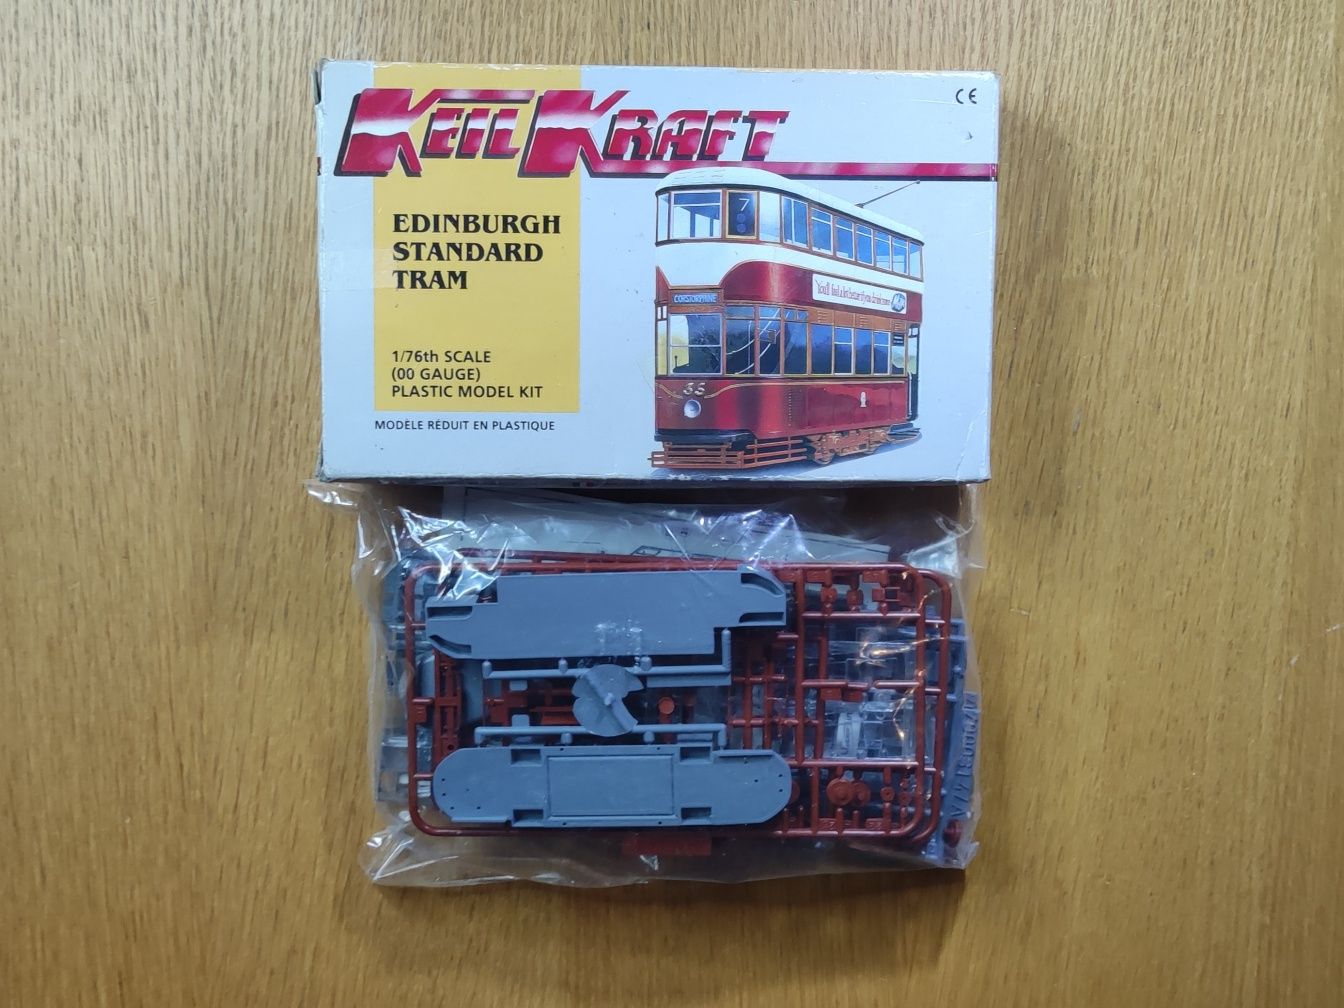 KEIL KRAFT - Edinburgh Standard Tran - Tramwaj Model 1:76